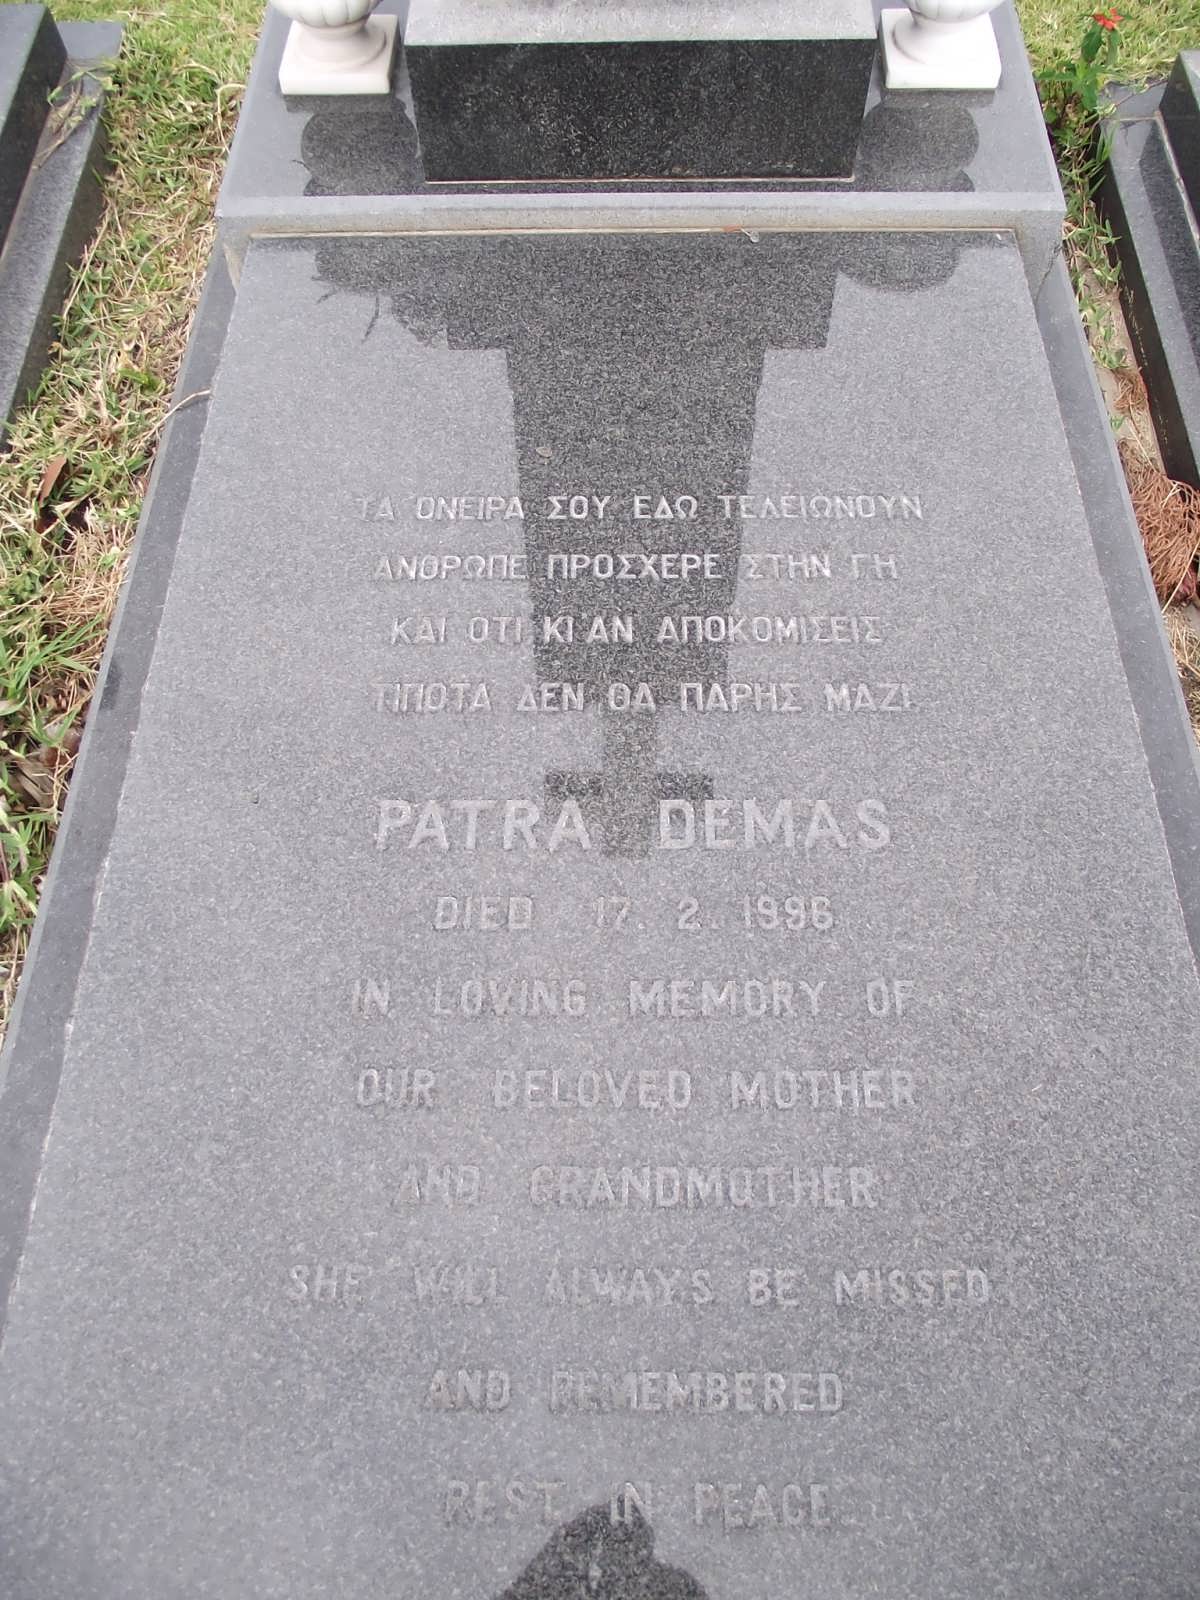 DEMAS Patra -1996